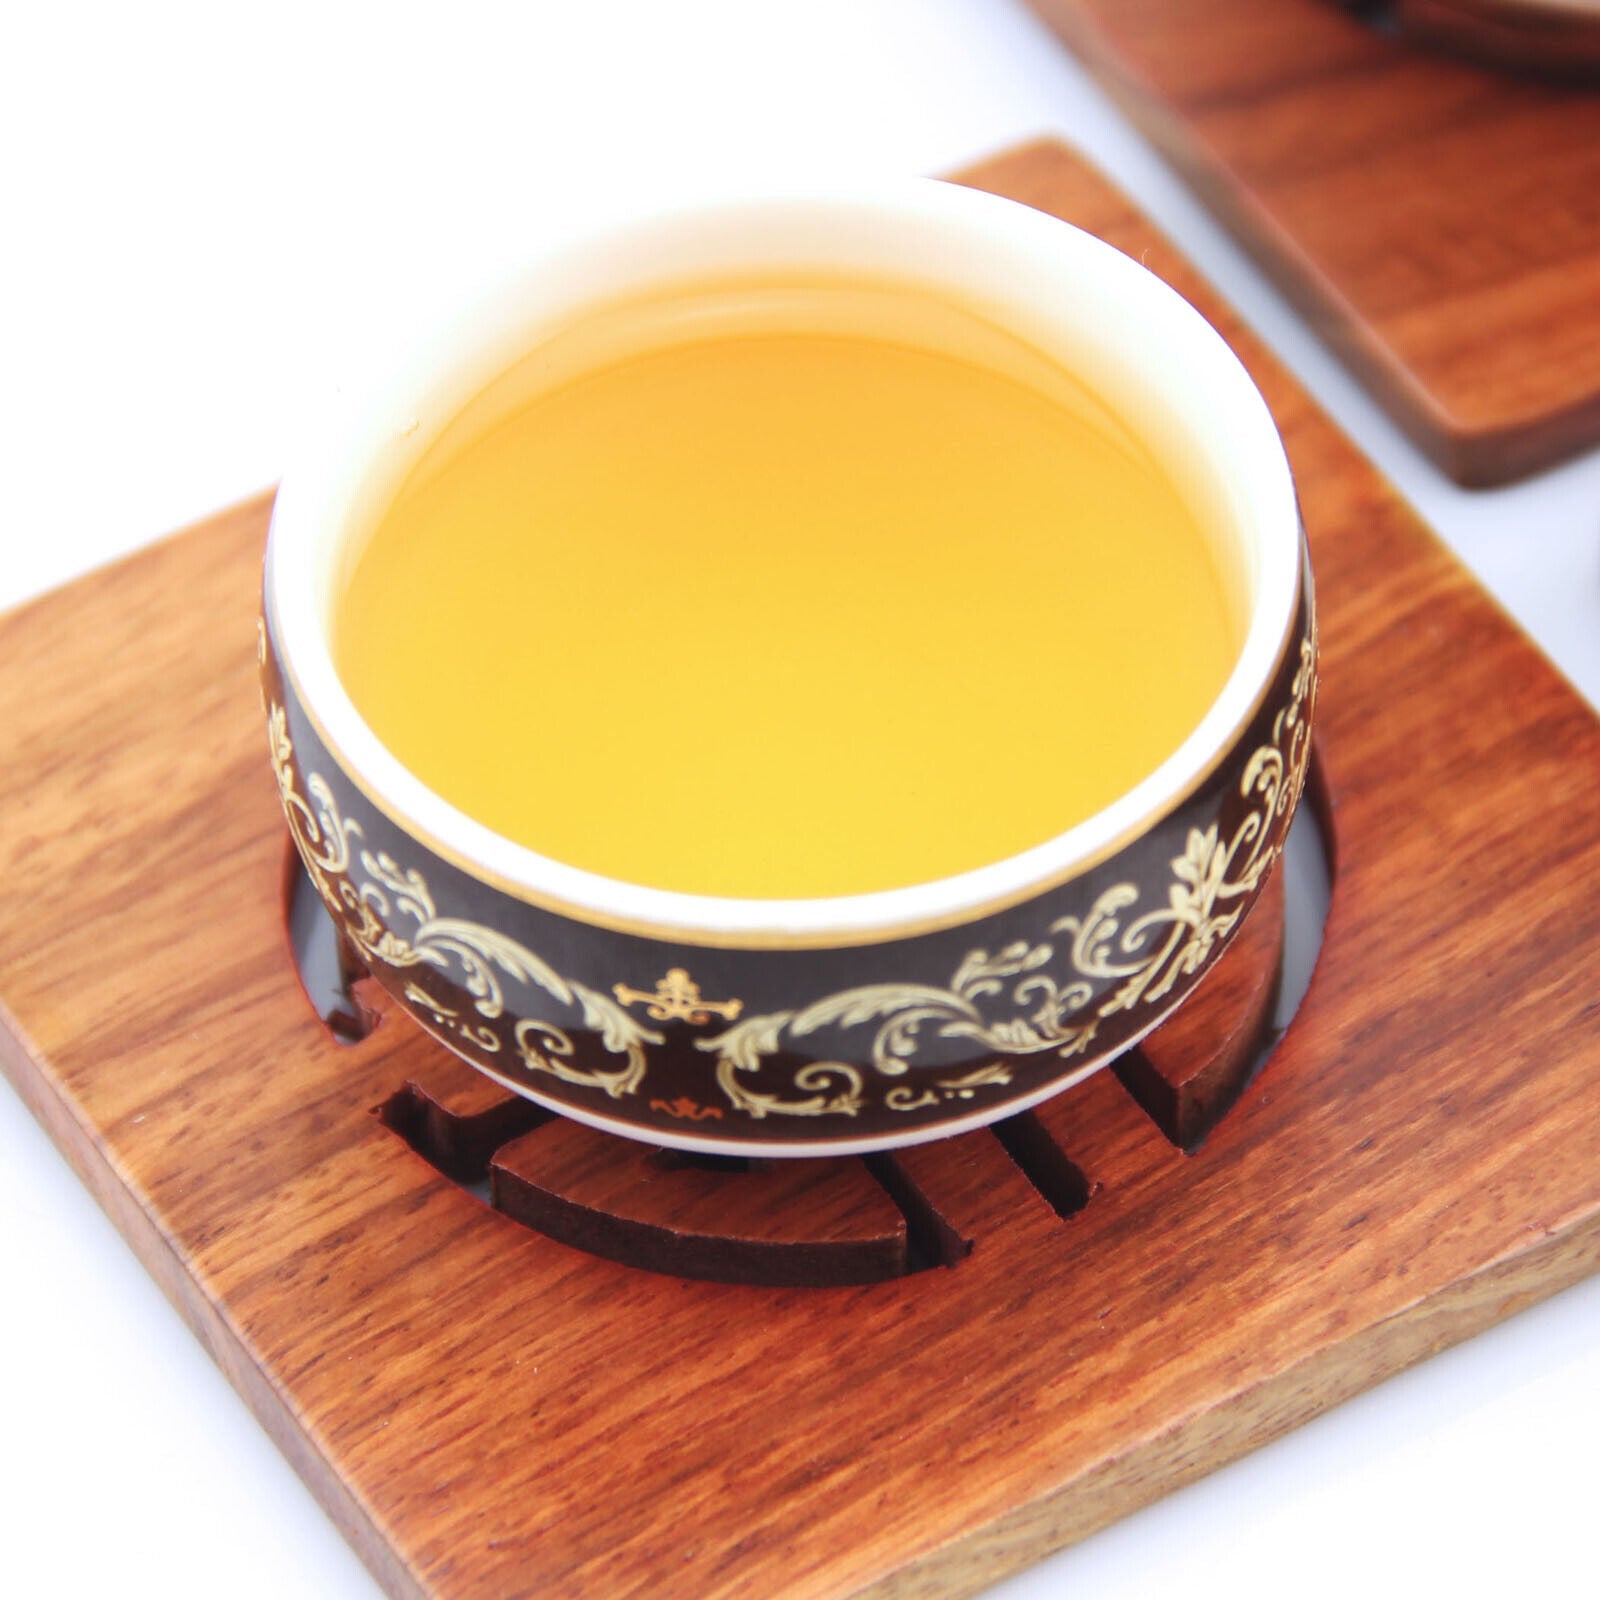 HelloYoung 100g Premium Silver Needle White Tea Bai hao Yin zhen Chinese Tips Loose